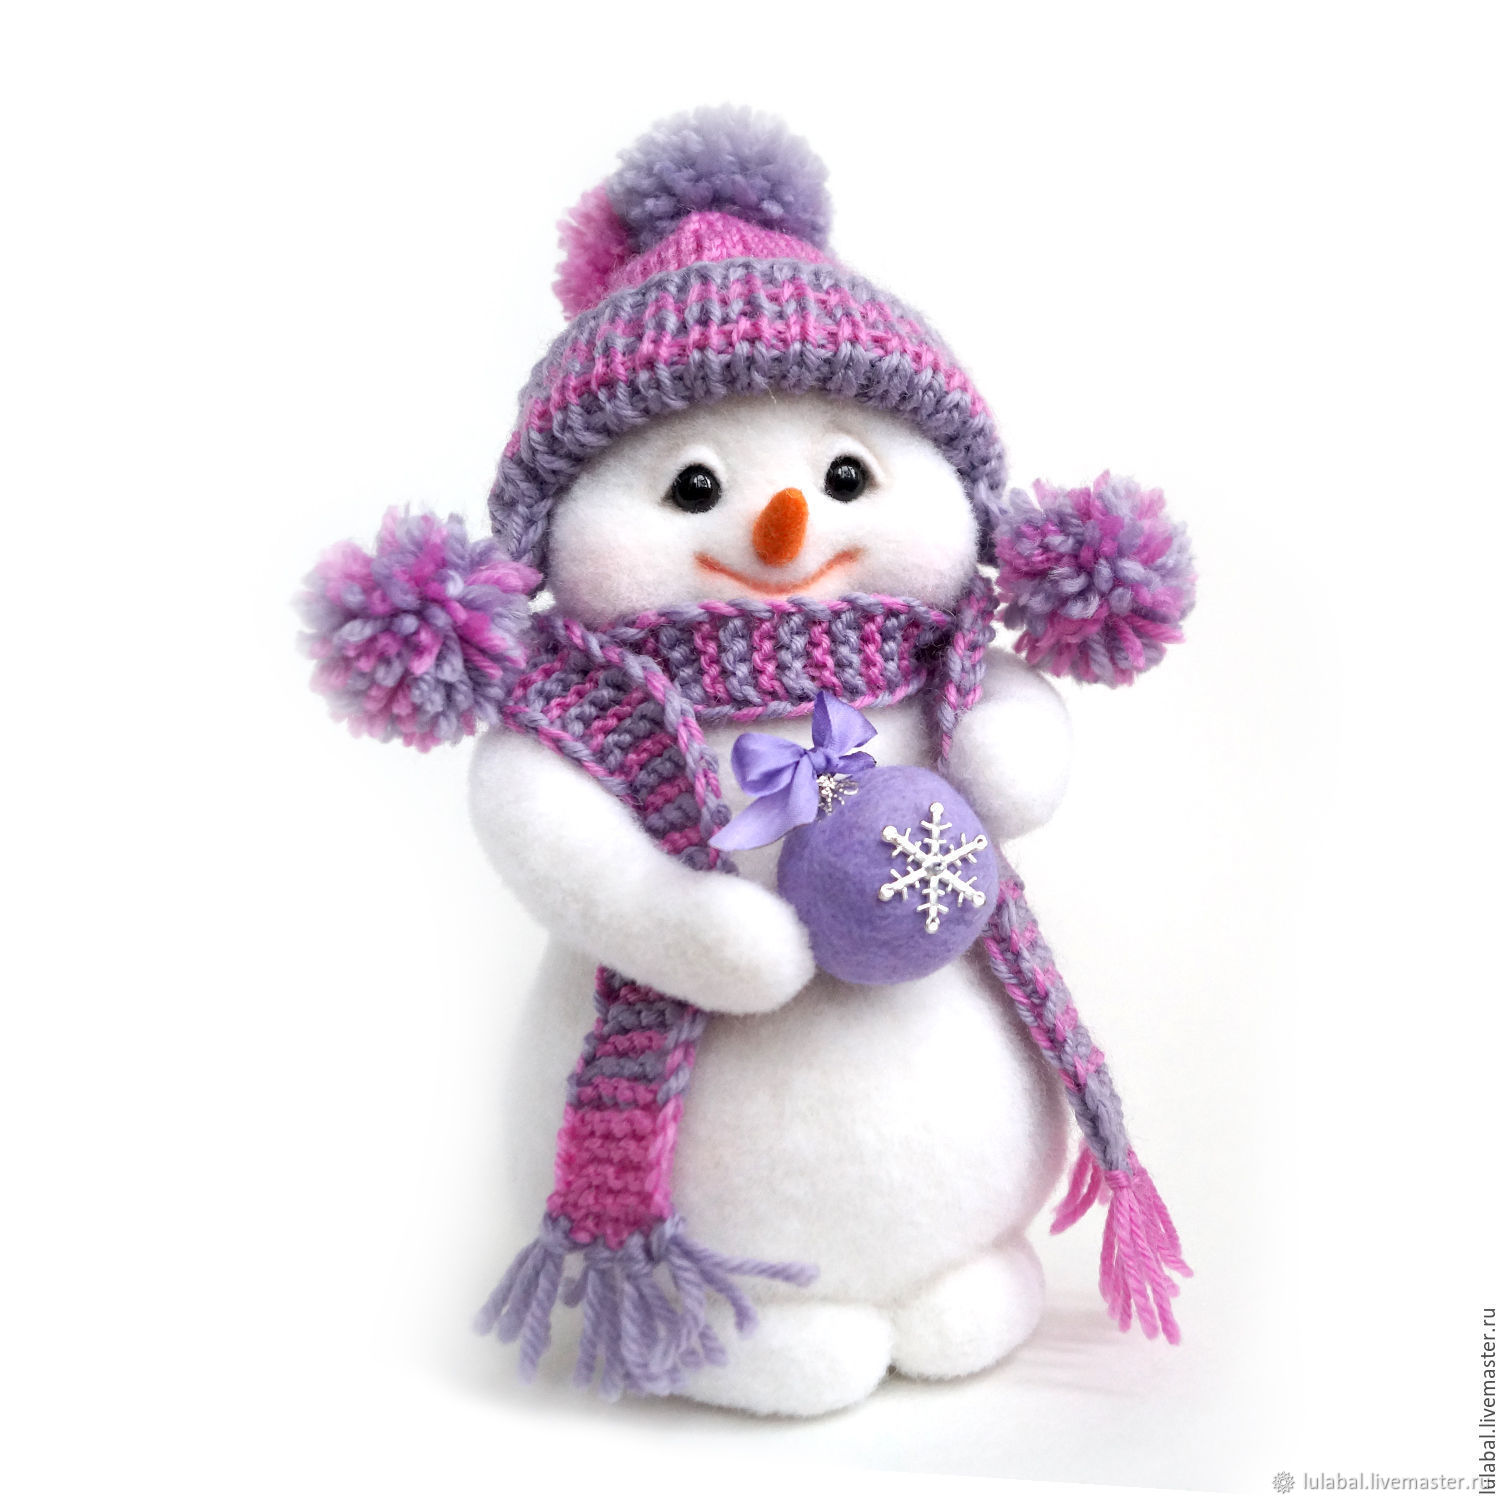 Снежком игрушка. Игрушка - Снеговик. Снеговички игрушки новогодние. Мягкая игрушка Снеговик. Игрушка валяная Снеговик.